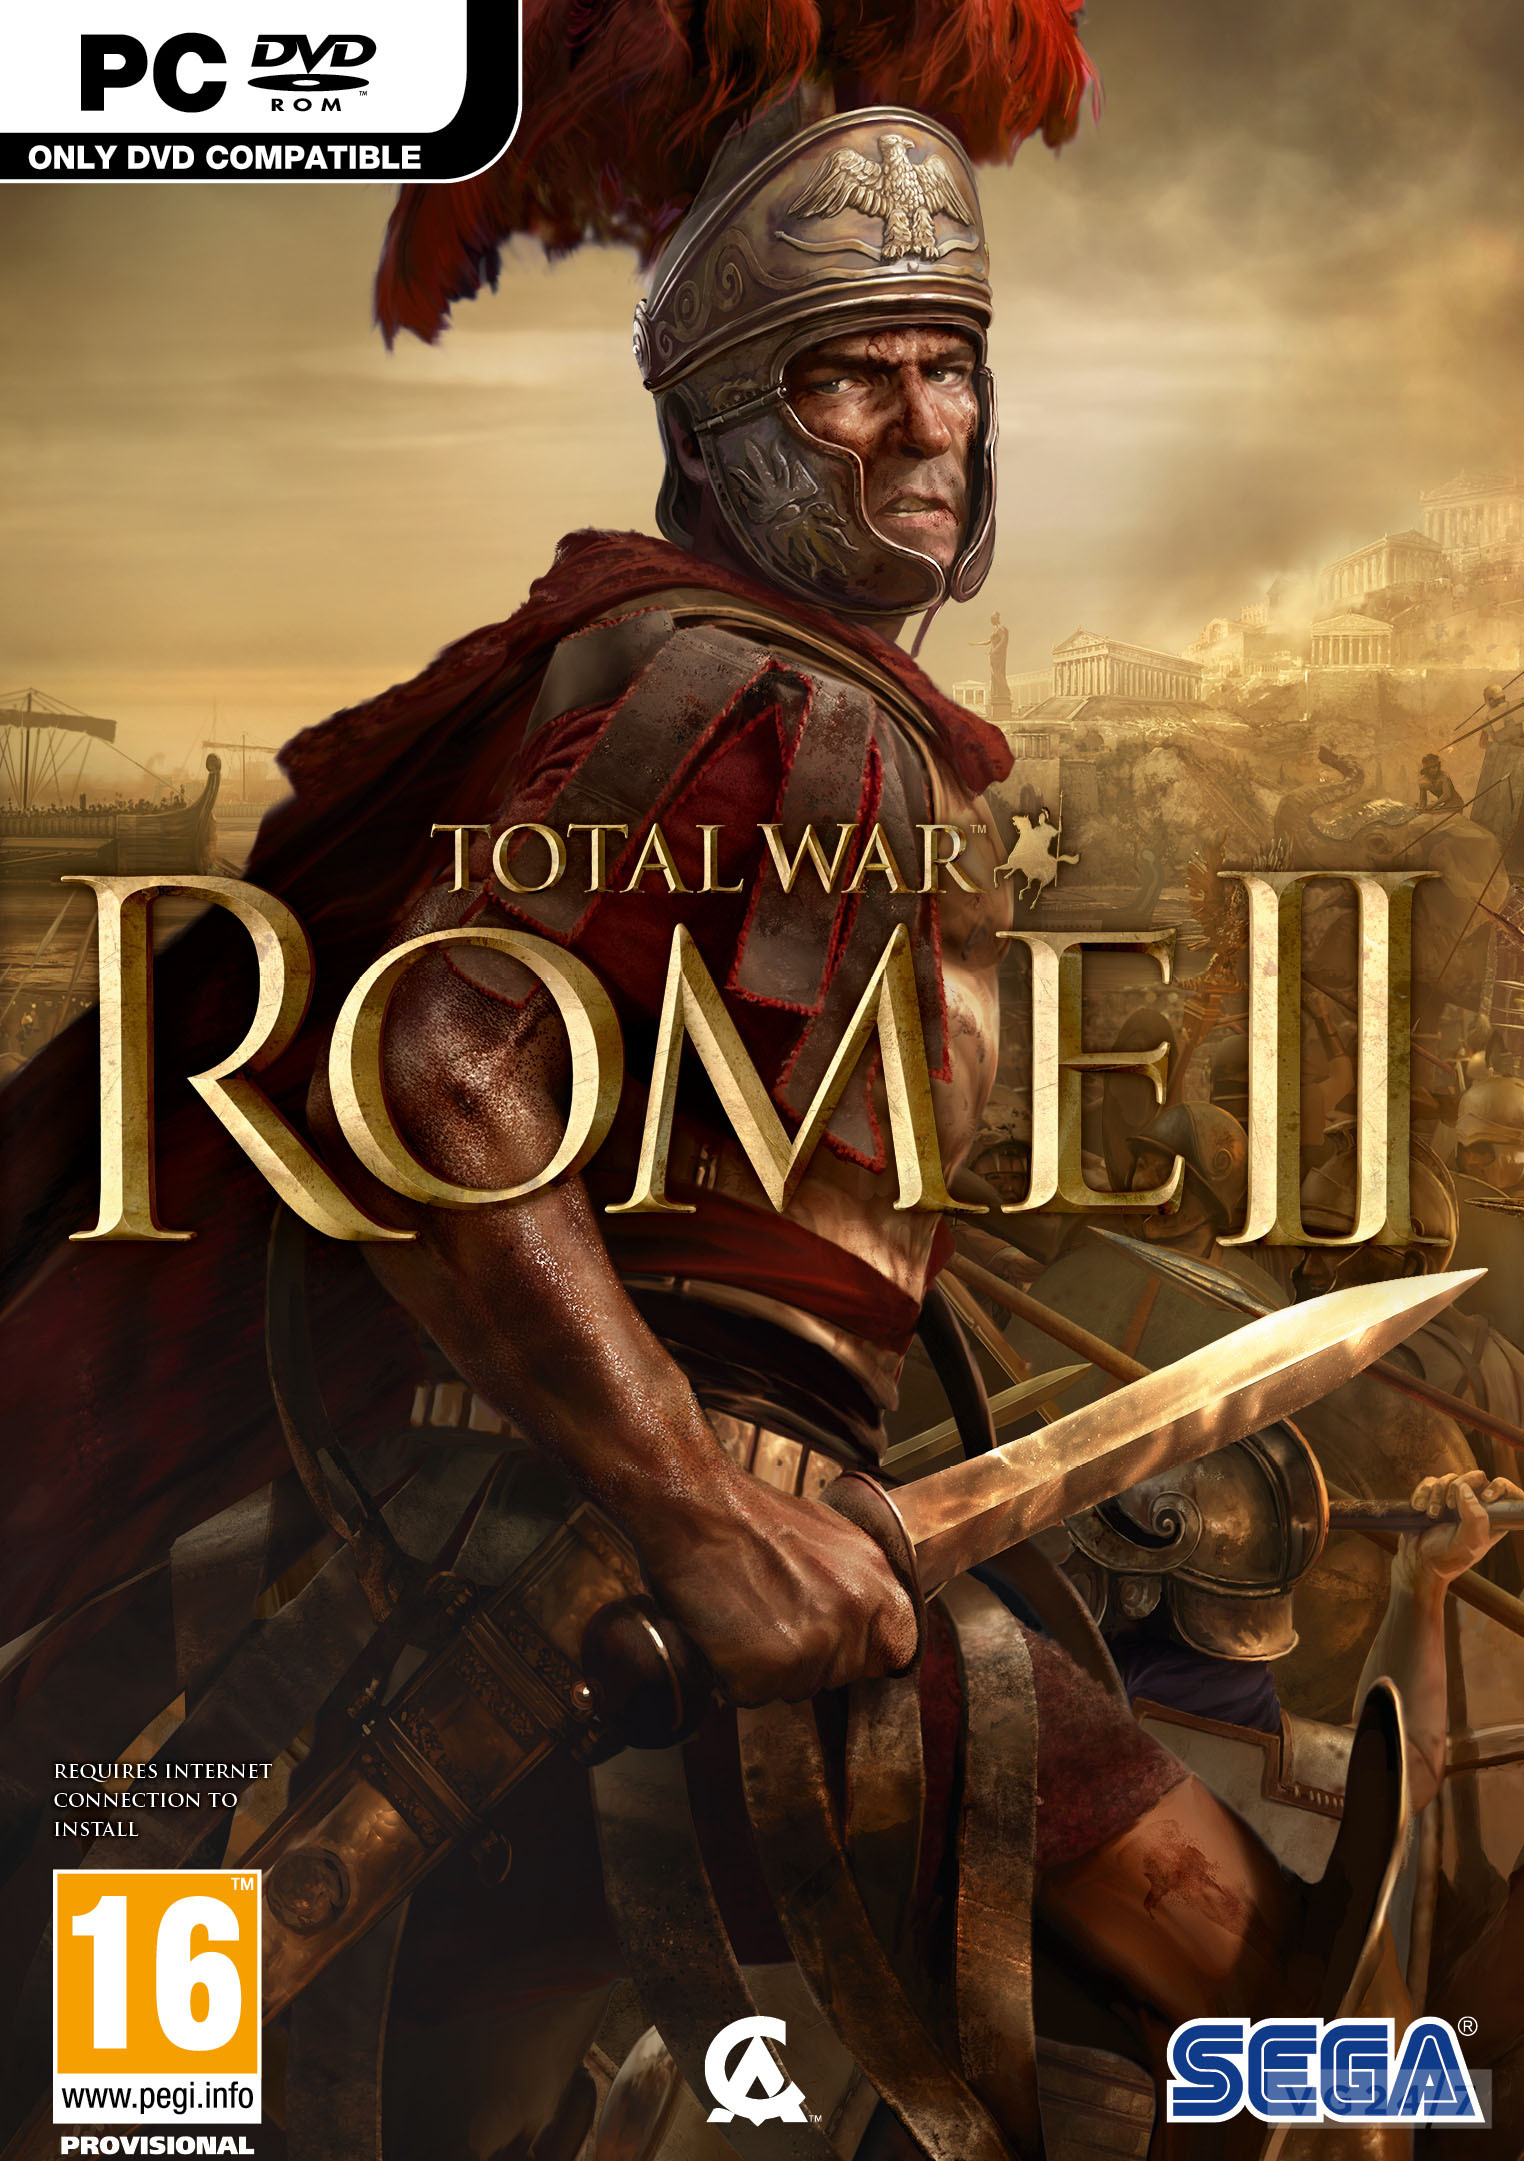 Total War: Rome II pc dvd-ის სურათის შედეგი